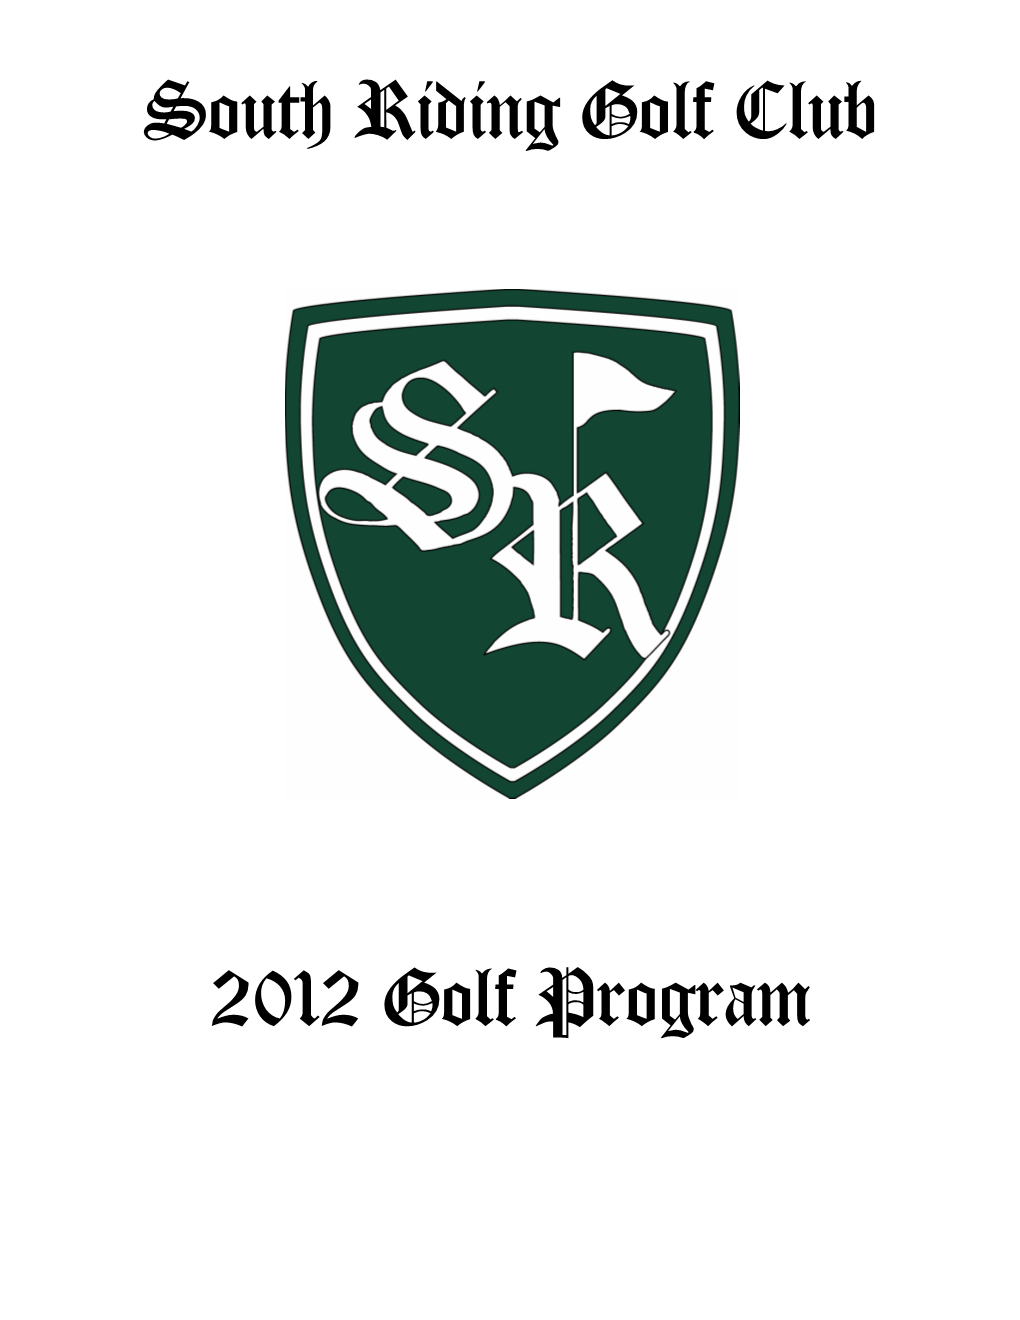 SRGC Golf Program 2012 Final